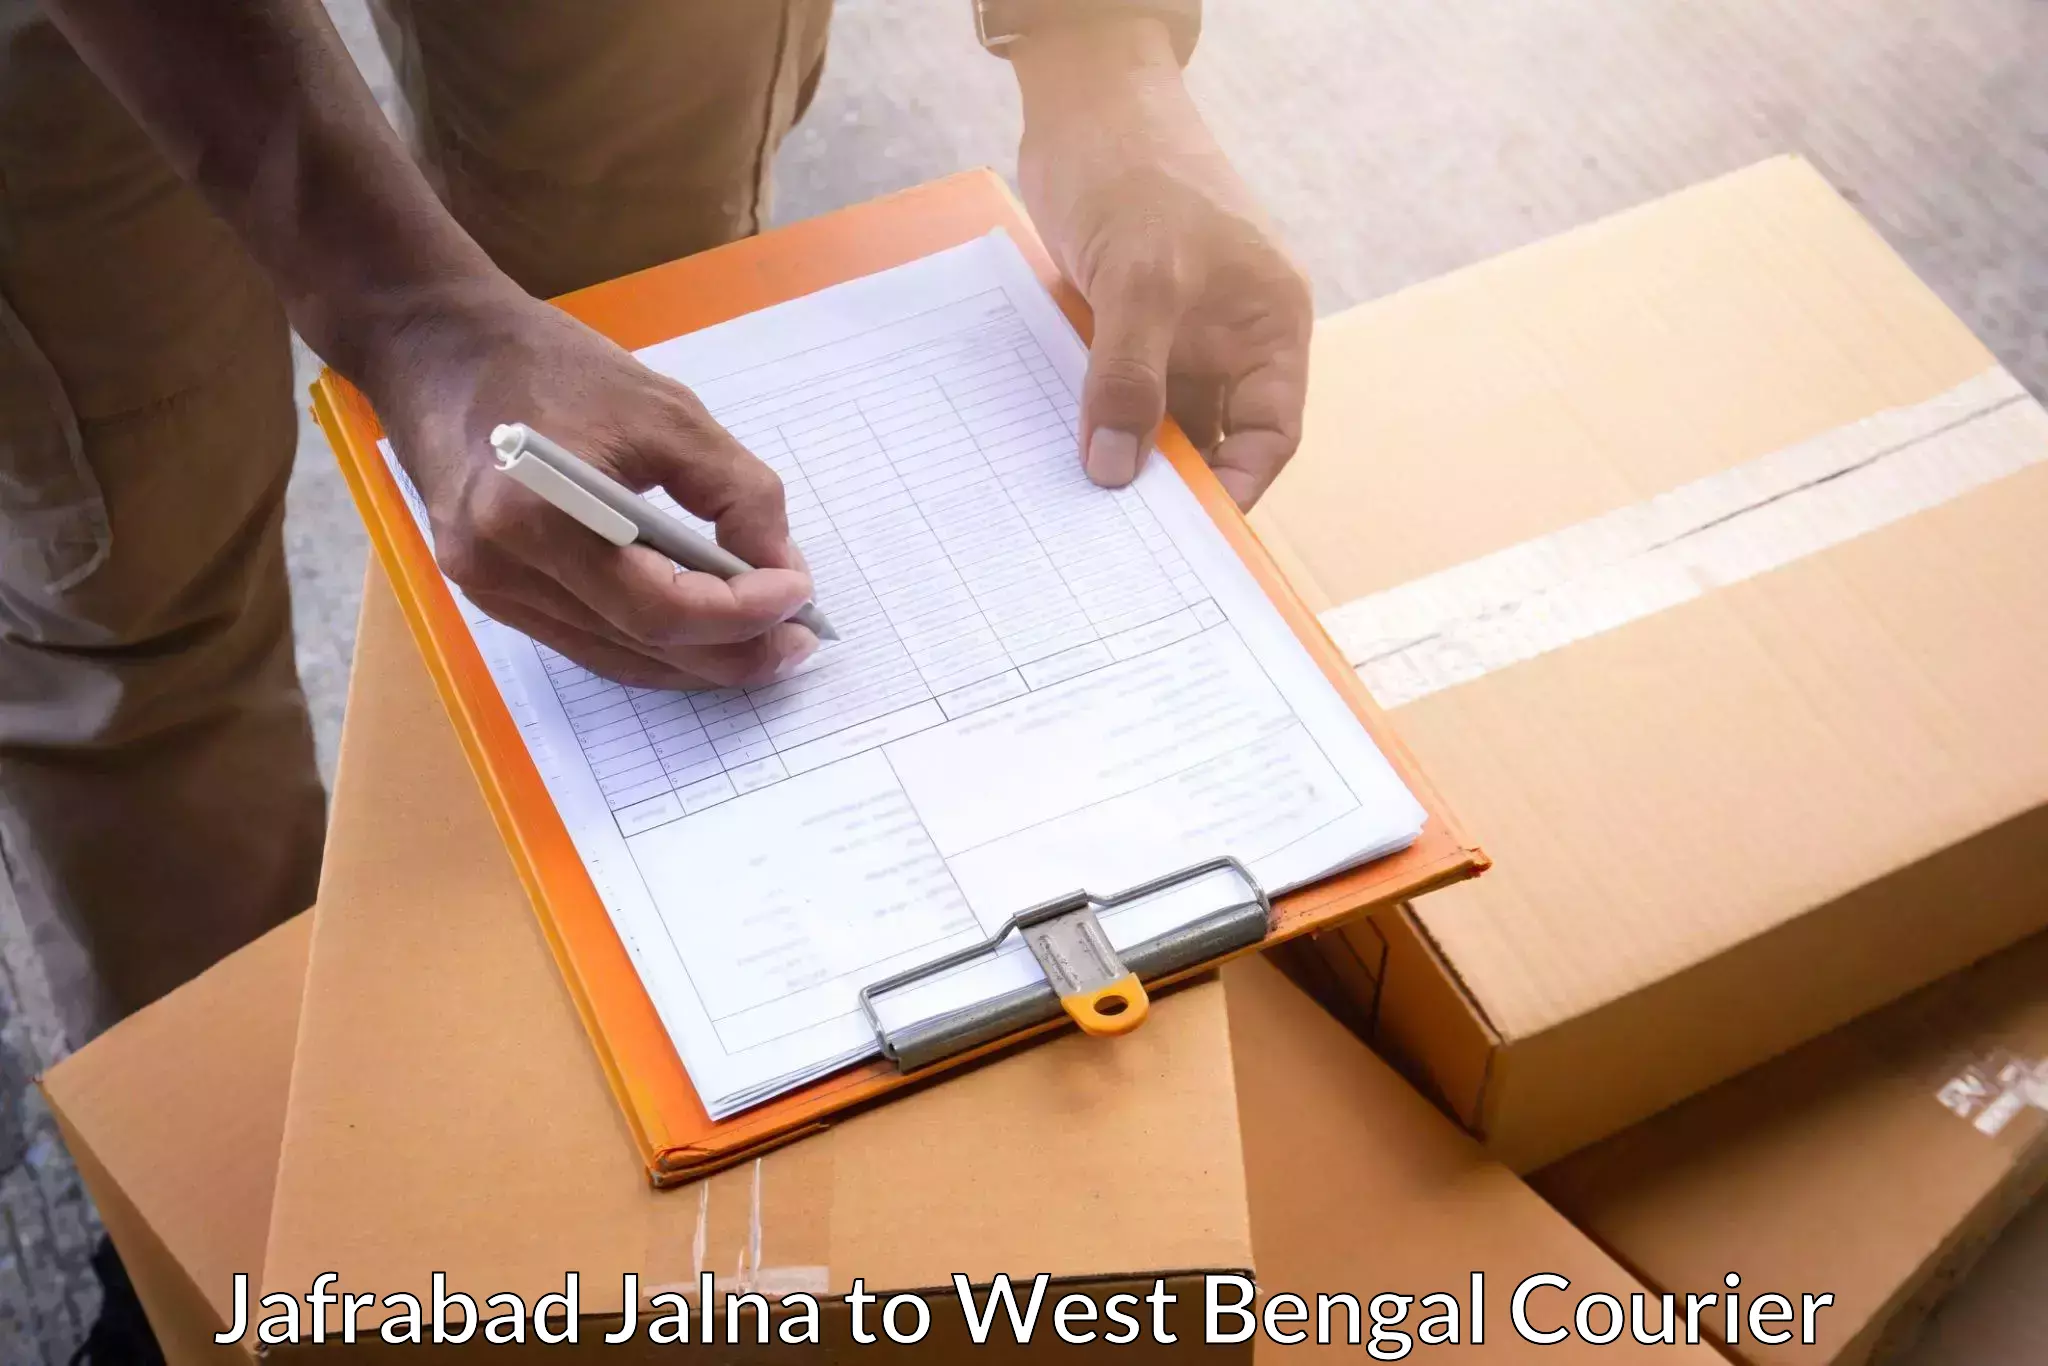 Tech-enabled shipping Jafrabad Jalna to Murshidabad